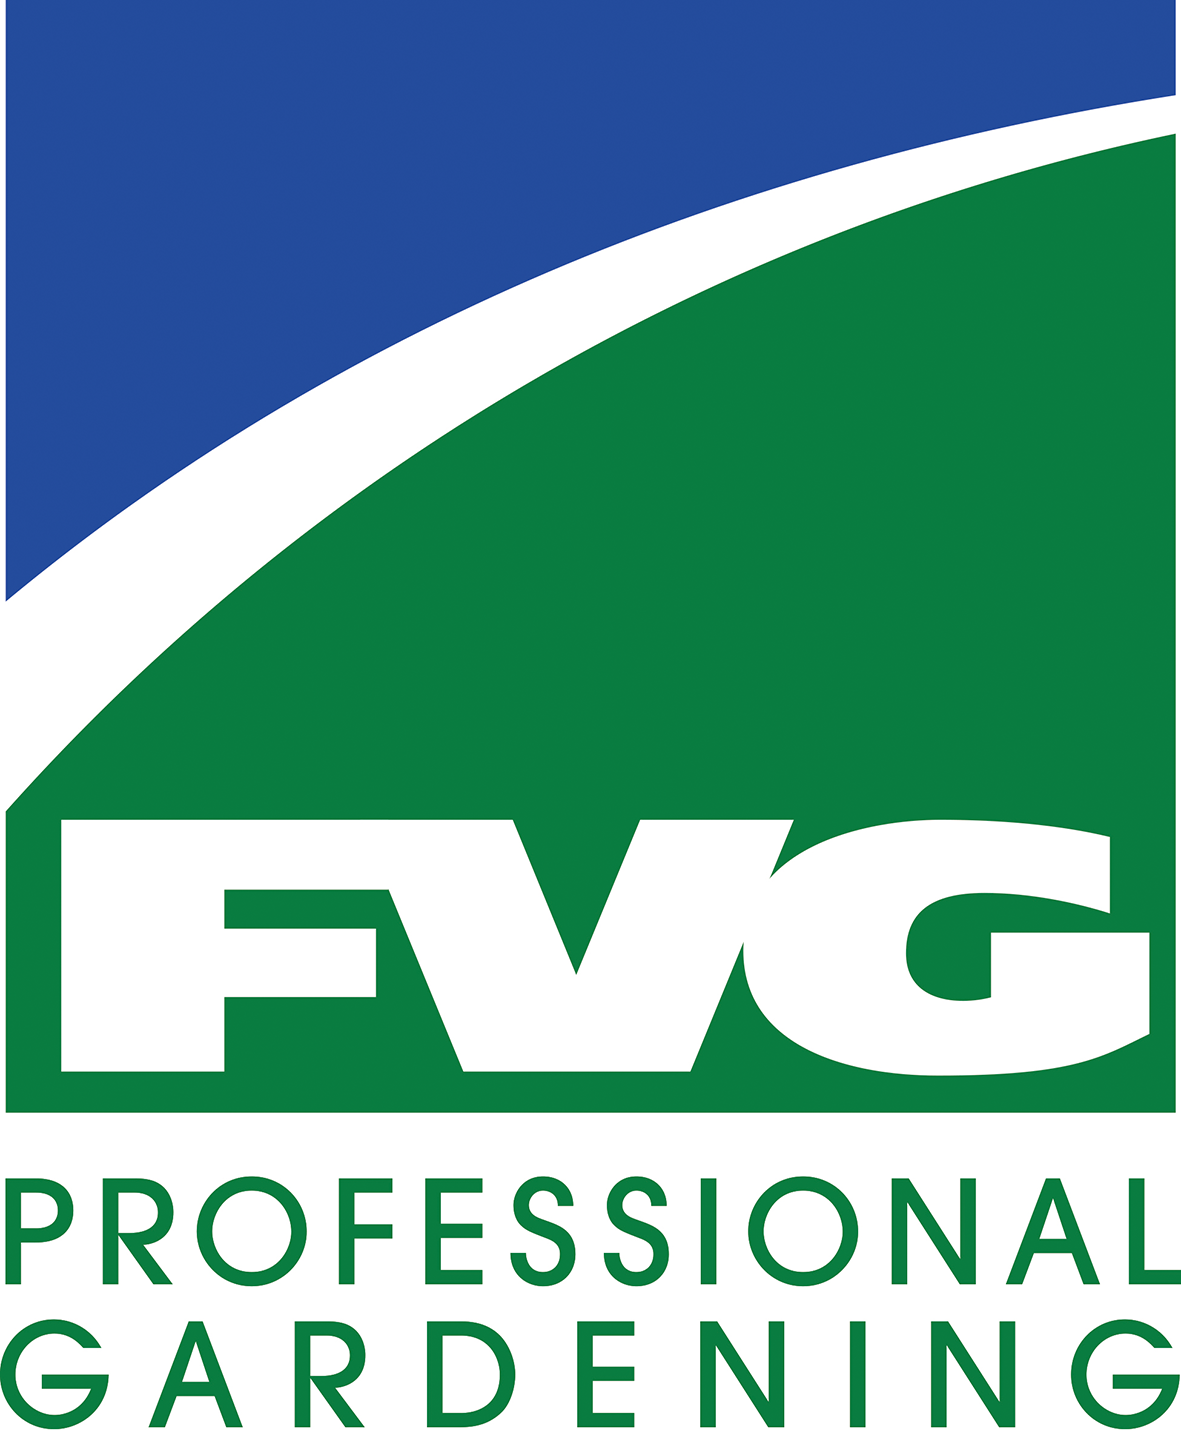 Firmenlogo in blau grün, mit Aufschrift FVG Professsional Gardeing